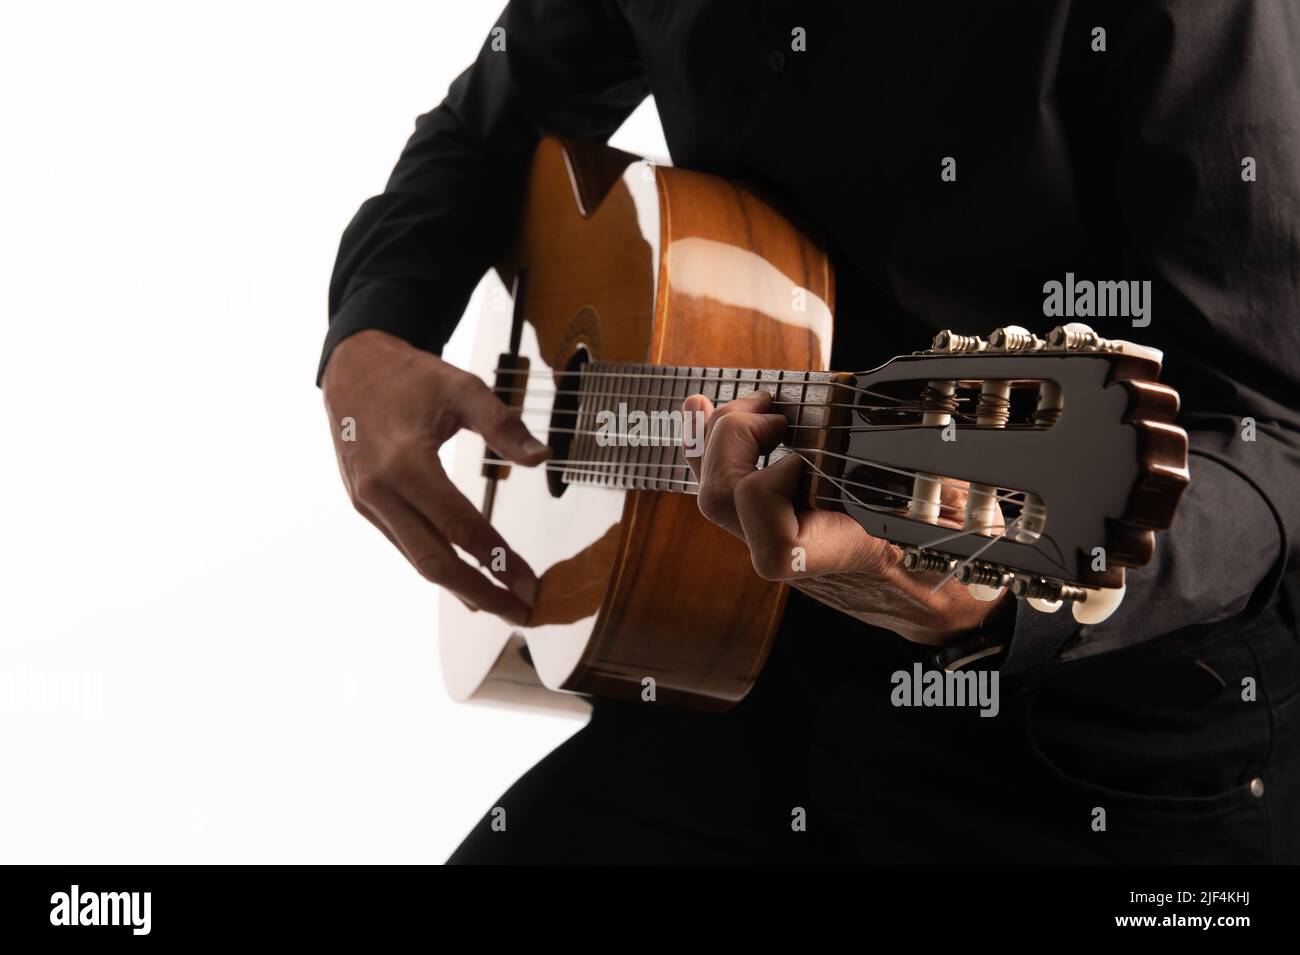 La chitarra classica isolata e il chitarrista si avvicinano a una messa a punto ravvicinata su sfondo bianco. Foto Stock